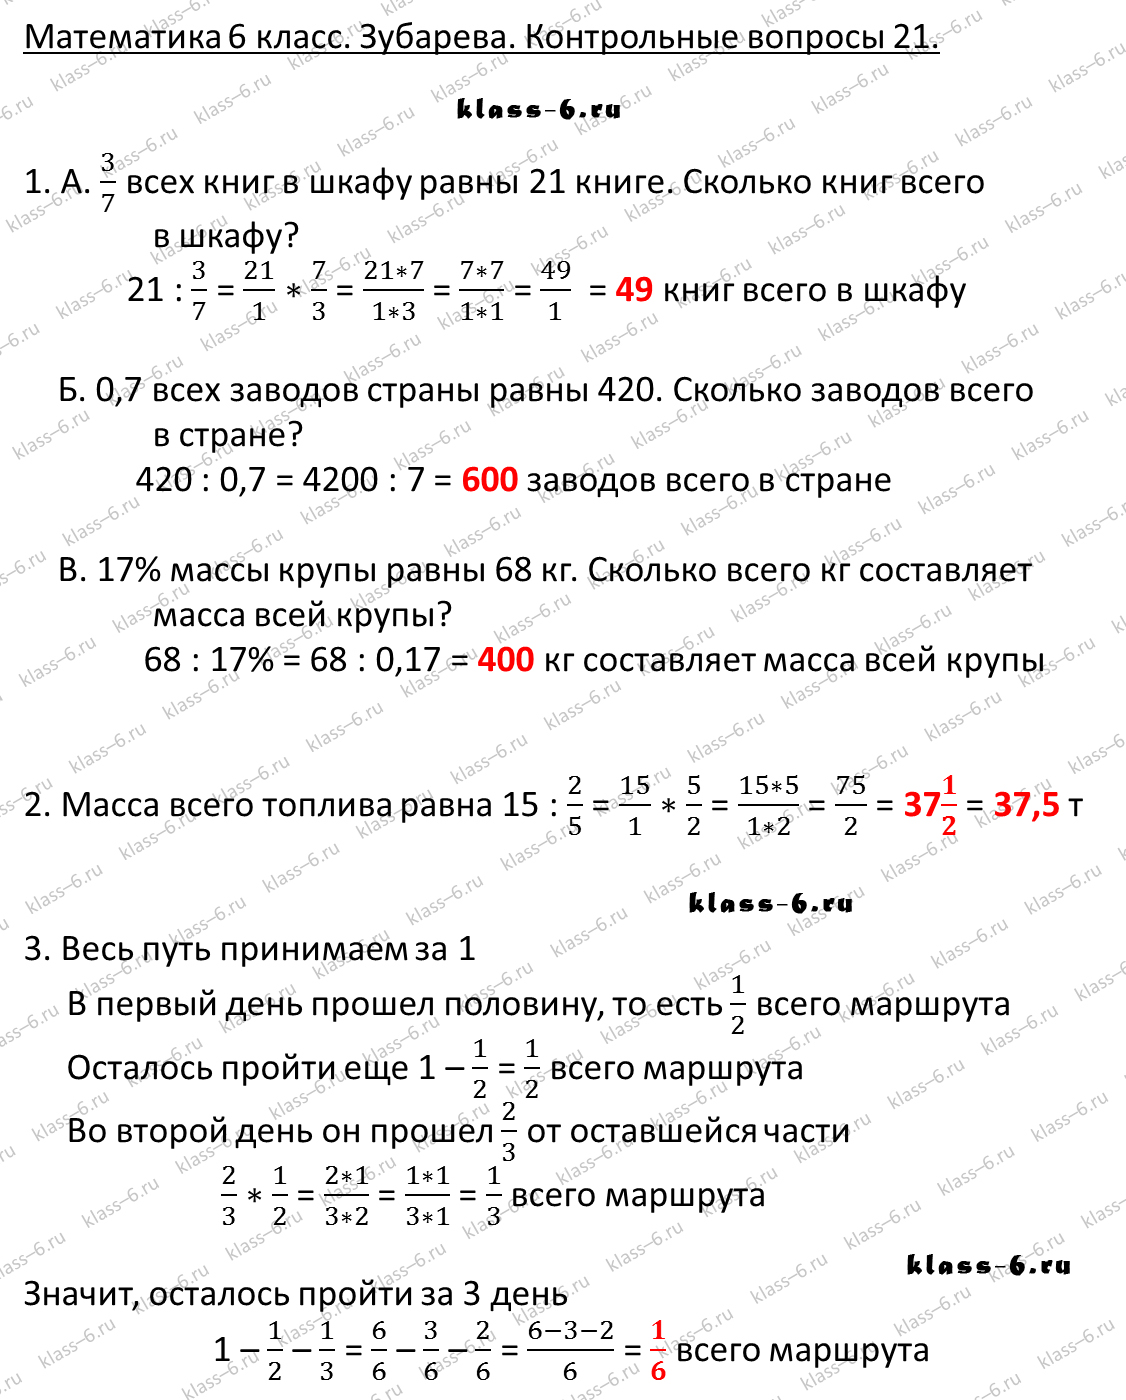 гдз математика Зубарева 6 класс ответ и подробное решение с объяснениями контрольных вопросов к параграфу № 21